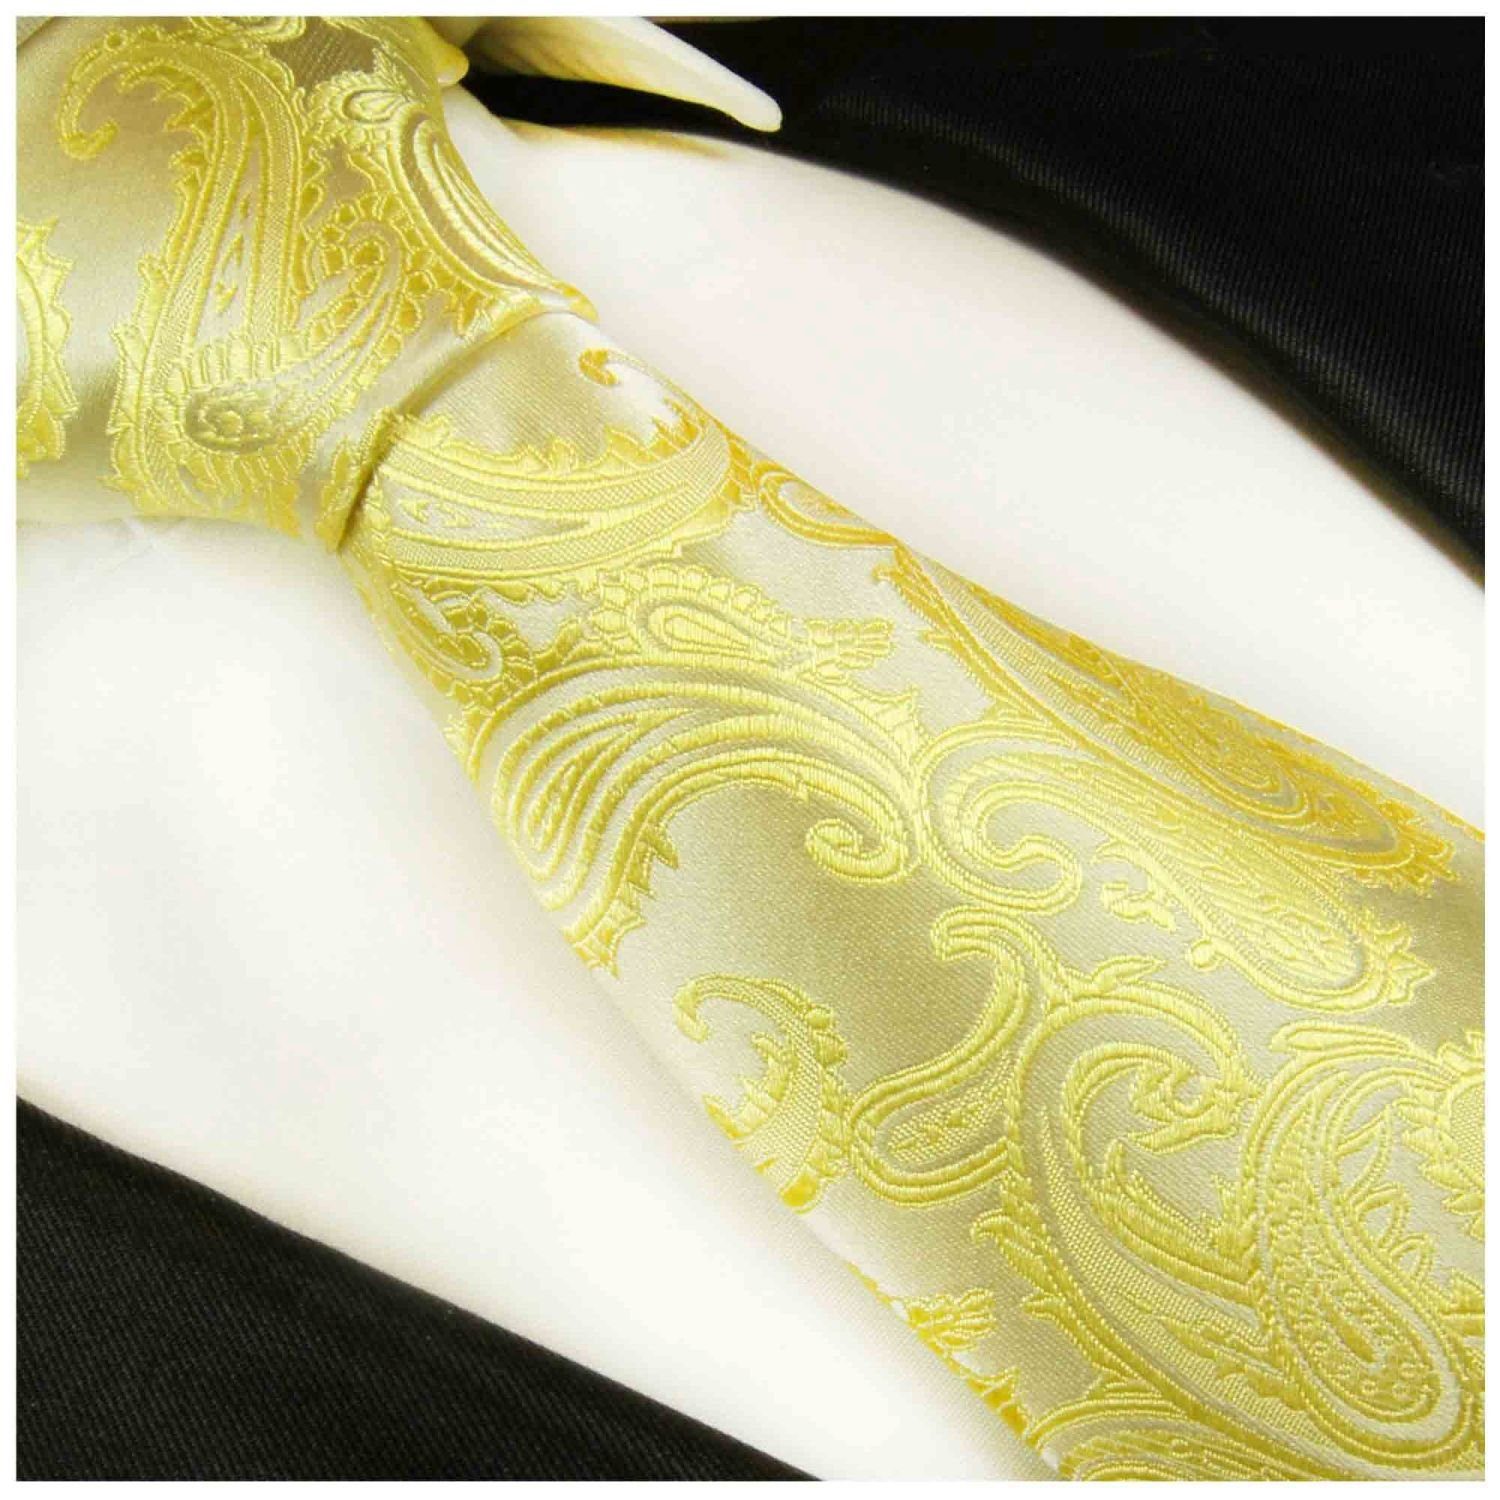 Paul Malone gelb Seidenkrawatte 100% Schlips Herren brokat Elegante Seide paisley Schmal Krawatte (6cm), 2107